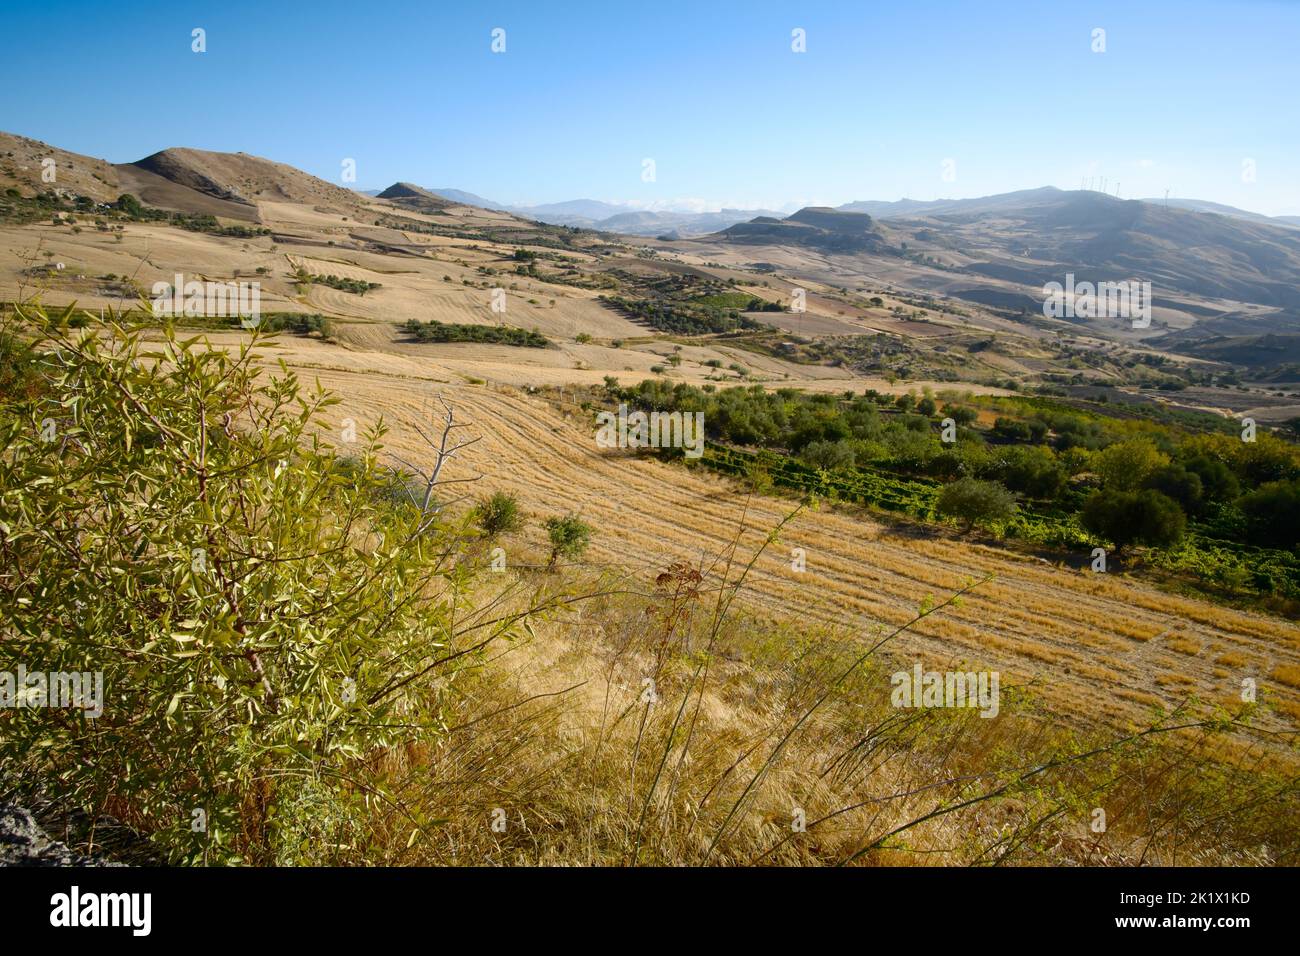 Los árboles en el campo y el trigo cosechado en el paisaje de Sicilia Foto de stock